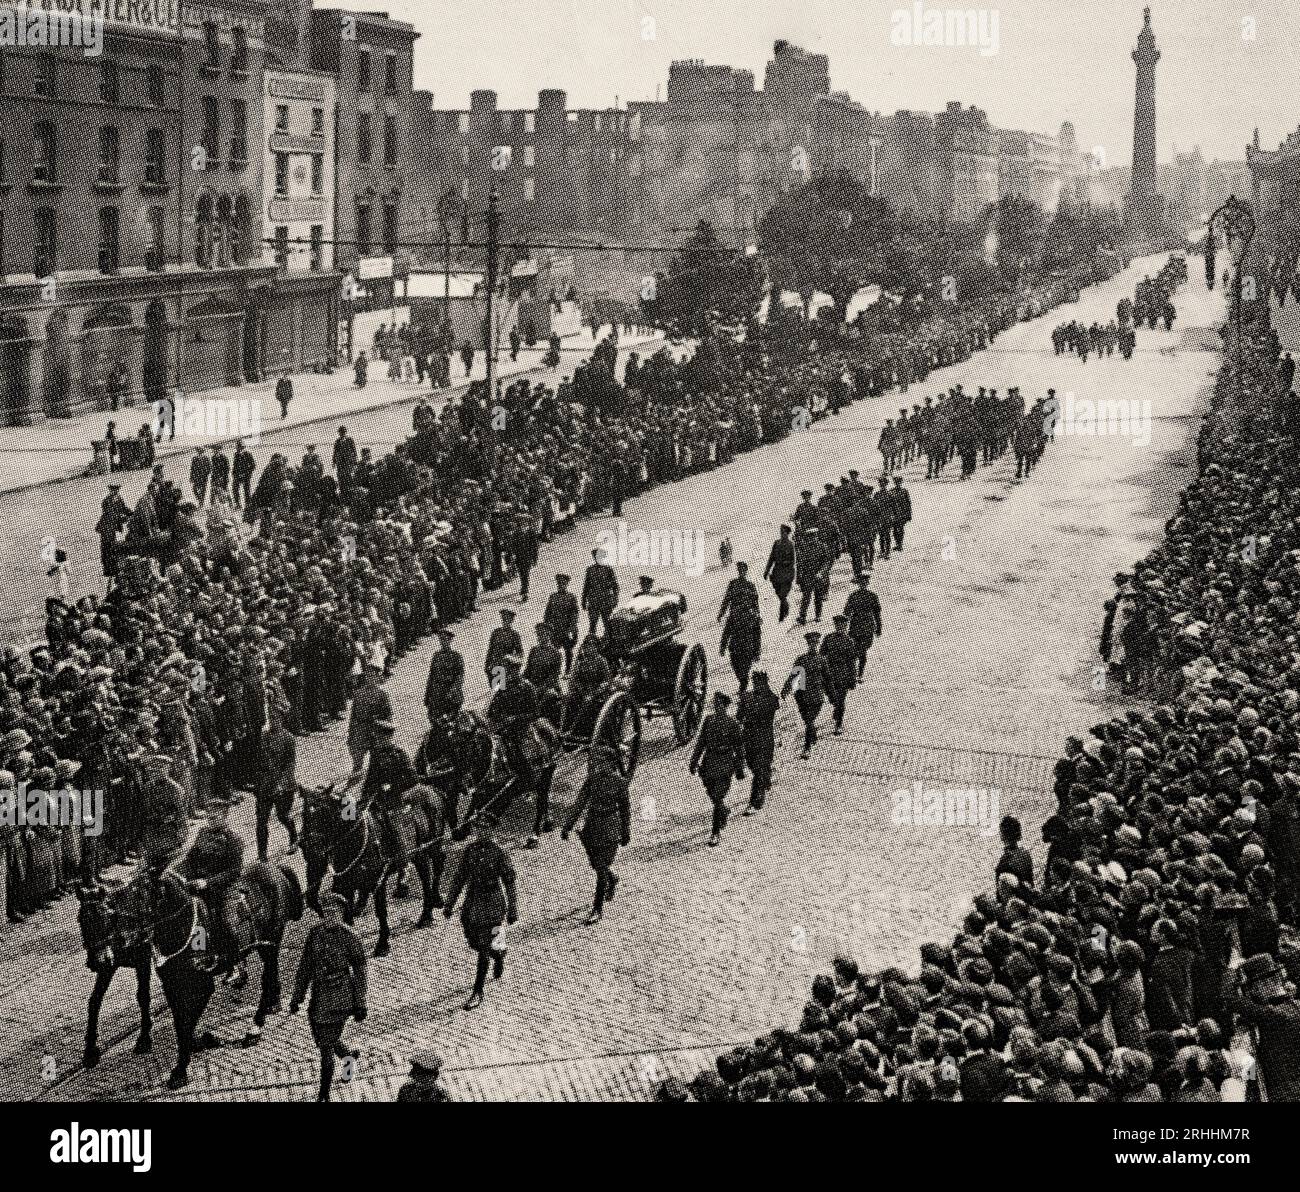 Le 22 août 1922, Michael Collins est tué dans une embuscade à Béal na mBláth près de Cork. Son cercueil sur un chariot tiré par des chevaux est tiré par des soldats de l'État libre sur des cols à cheval sur O'Connell Street en route vers le cimetière de Glasnevin le 28 août 1922. Banque D'Images